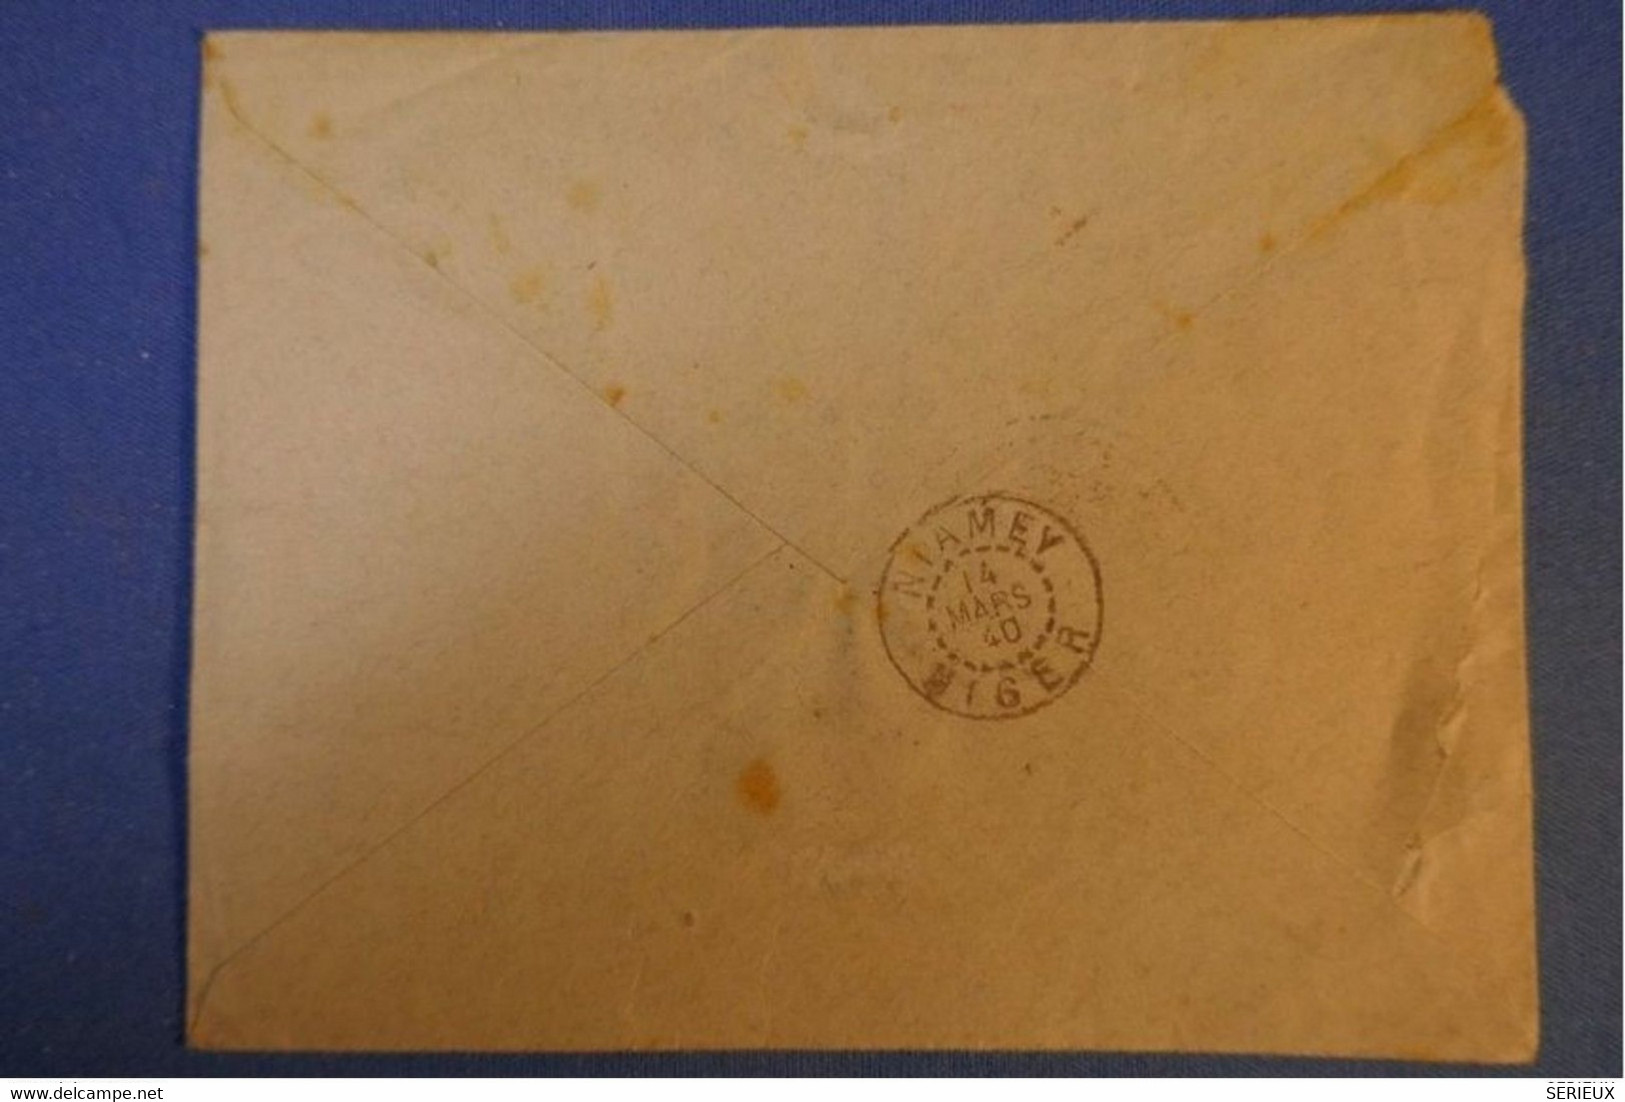 463 NIGER LETTRE RARE RECOM. 1940 FRANC MILITAIRE +CONTROLE VOIE SAHARIENNE NIAMEY   BRANNE FRANCE +AFFRANCH INTERESSANT - Covers & Documents